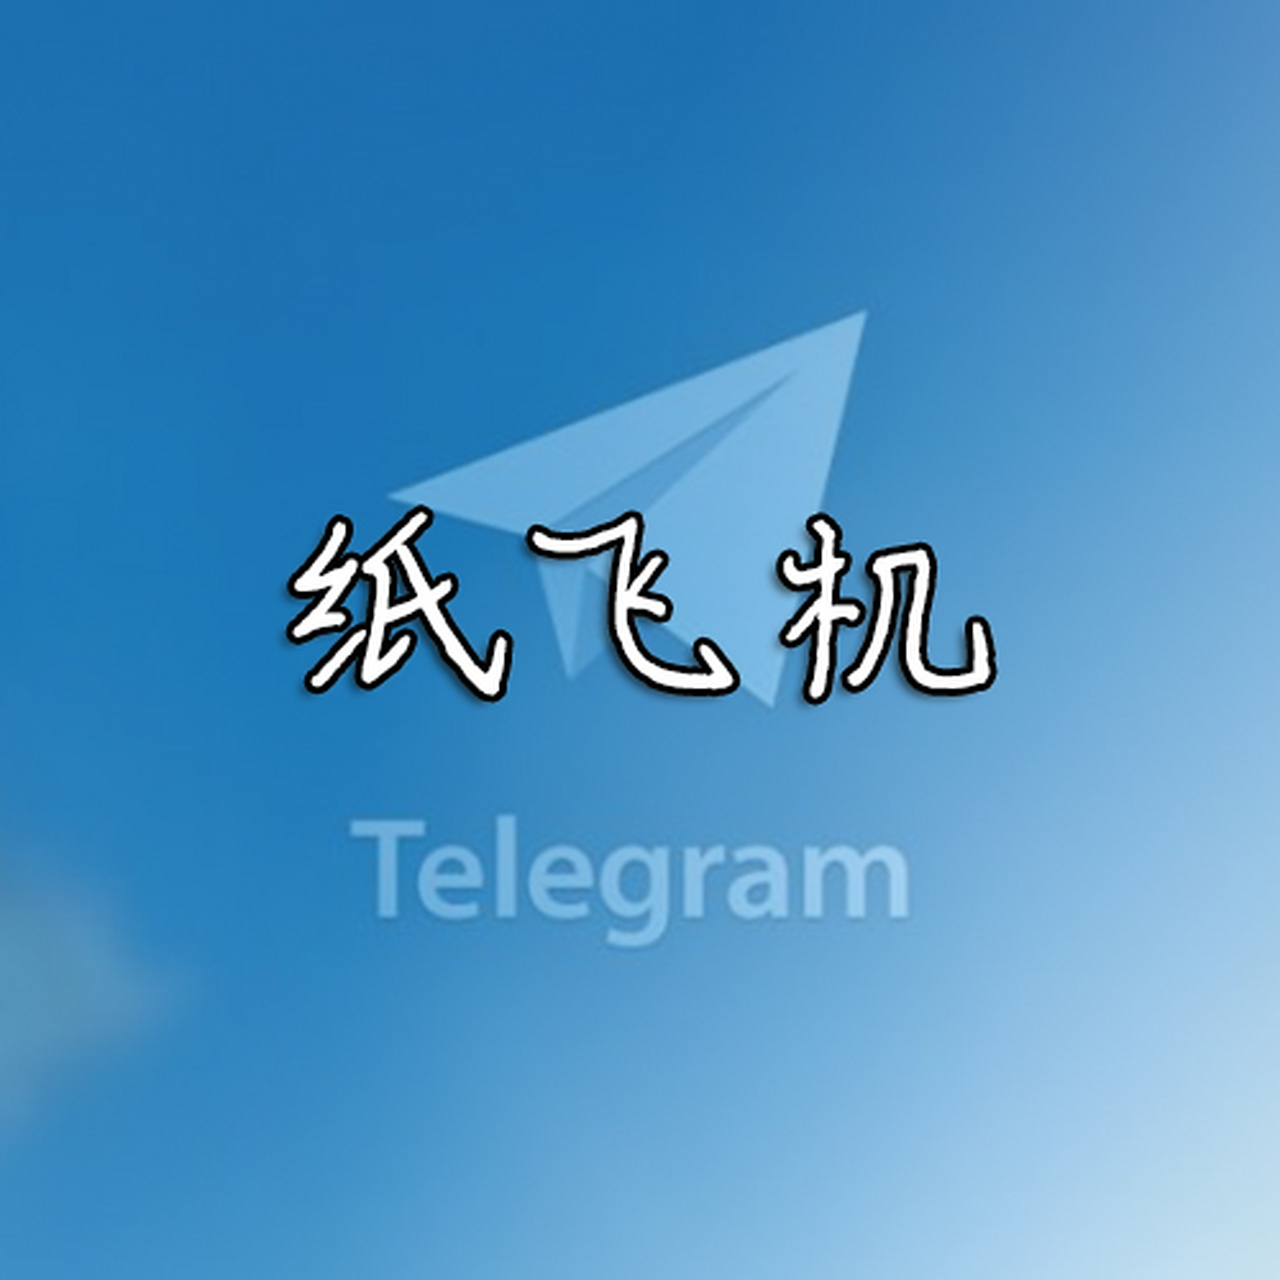 纸飞机中文版下载官网-telegeram安卓下载